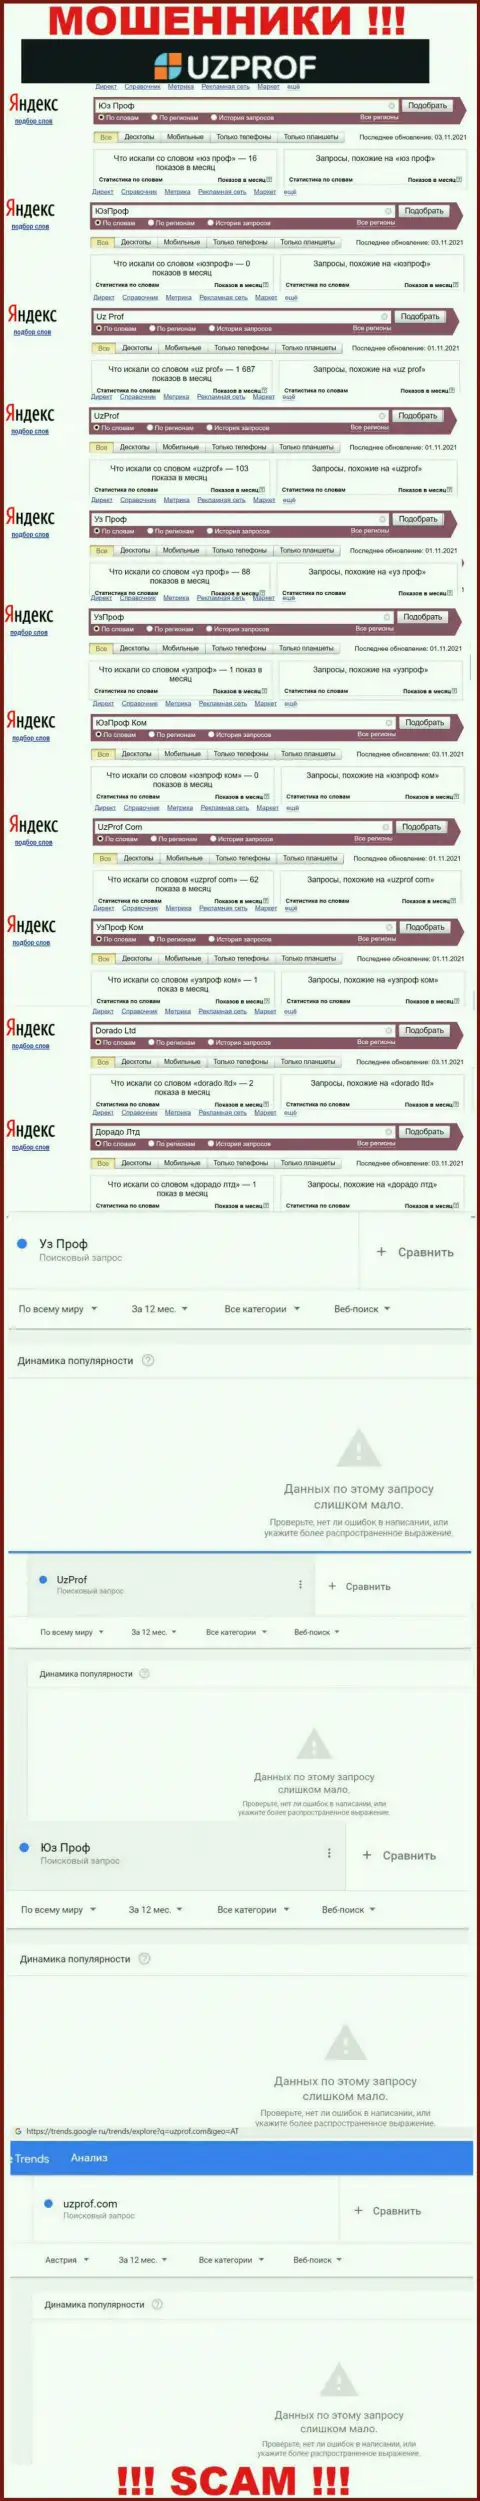 Анализ онлайн-запросов по мошенникам UzProf в интернет сети